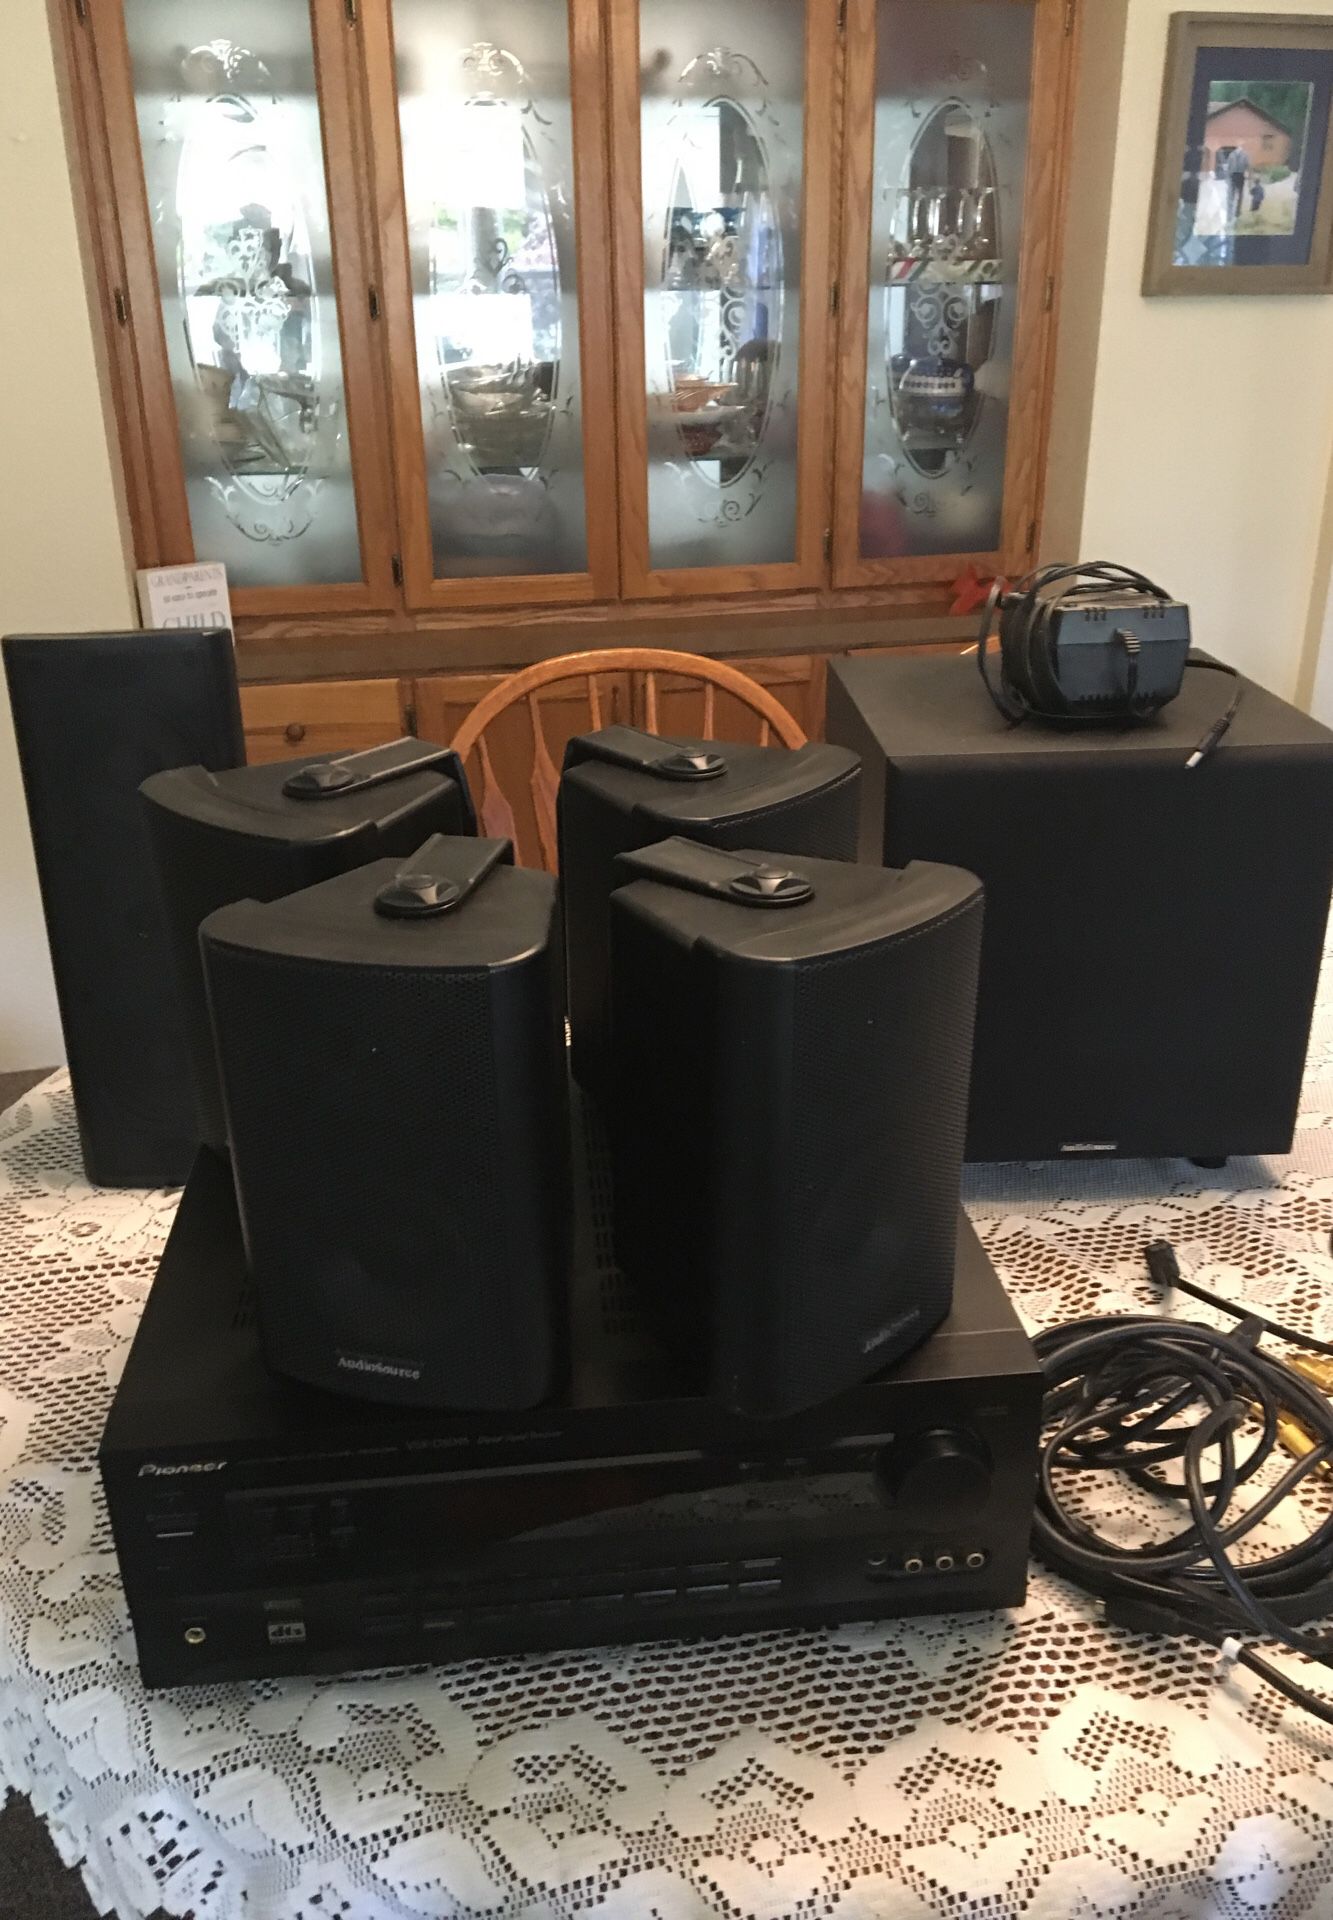 Audiosource surround sound setup,pioneer receiver